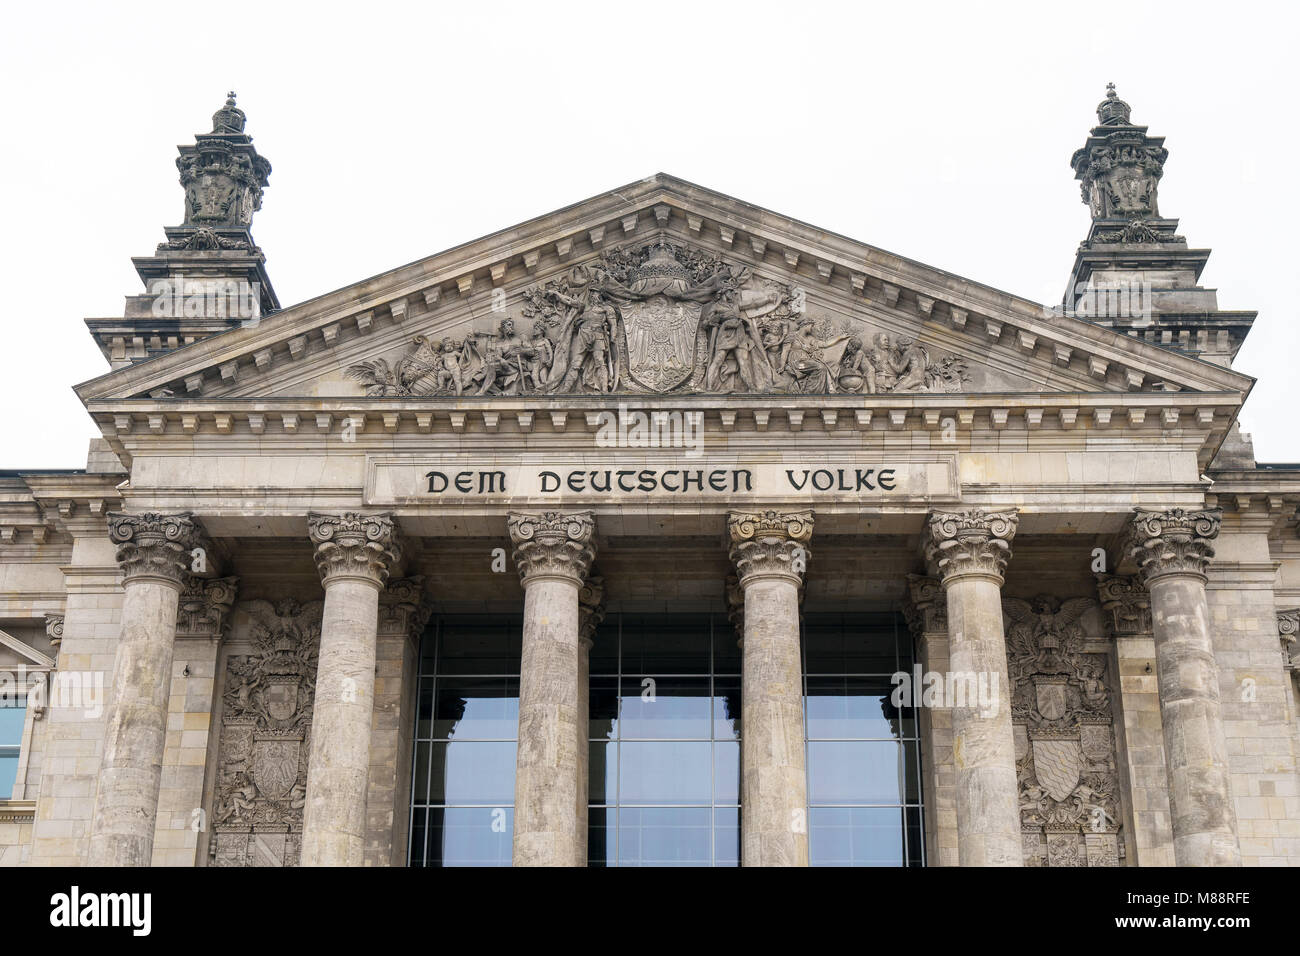 Iscrizione in tedesco Dem Deutschen Volke, significato per il popolo tedesco, sul portale del Bundestag o edificio del Reichstag a Berlino, Germania Foto Stock